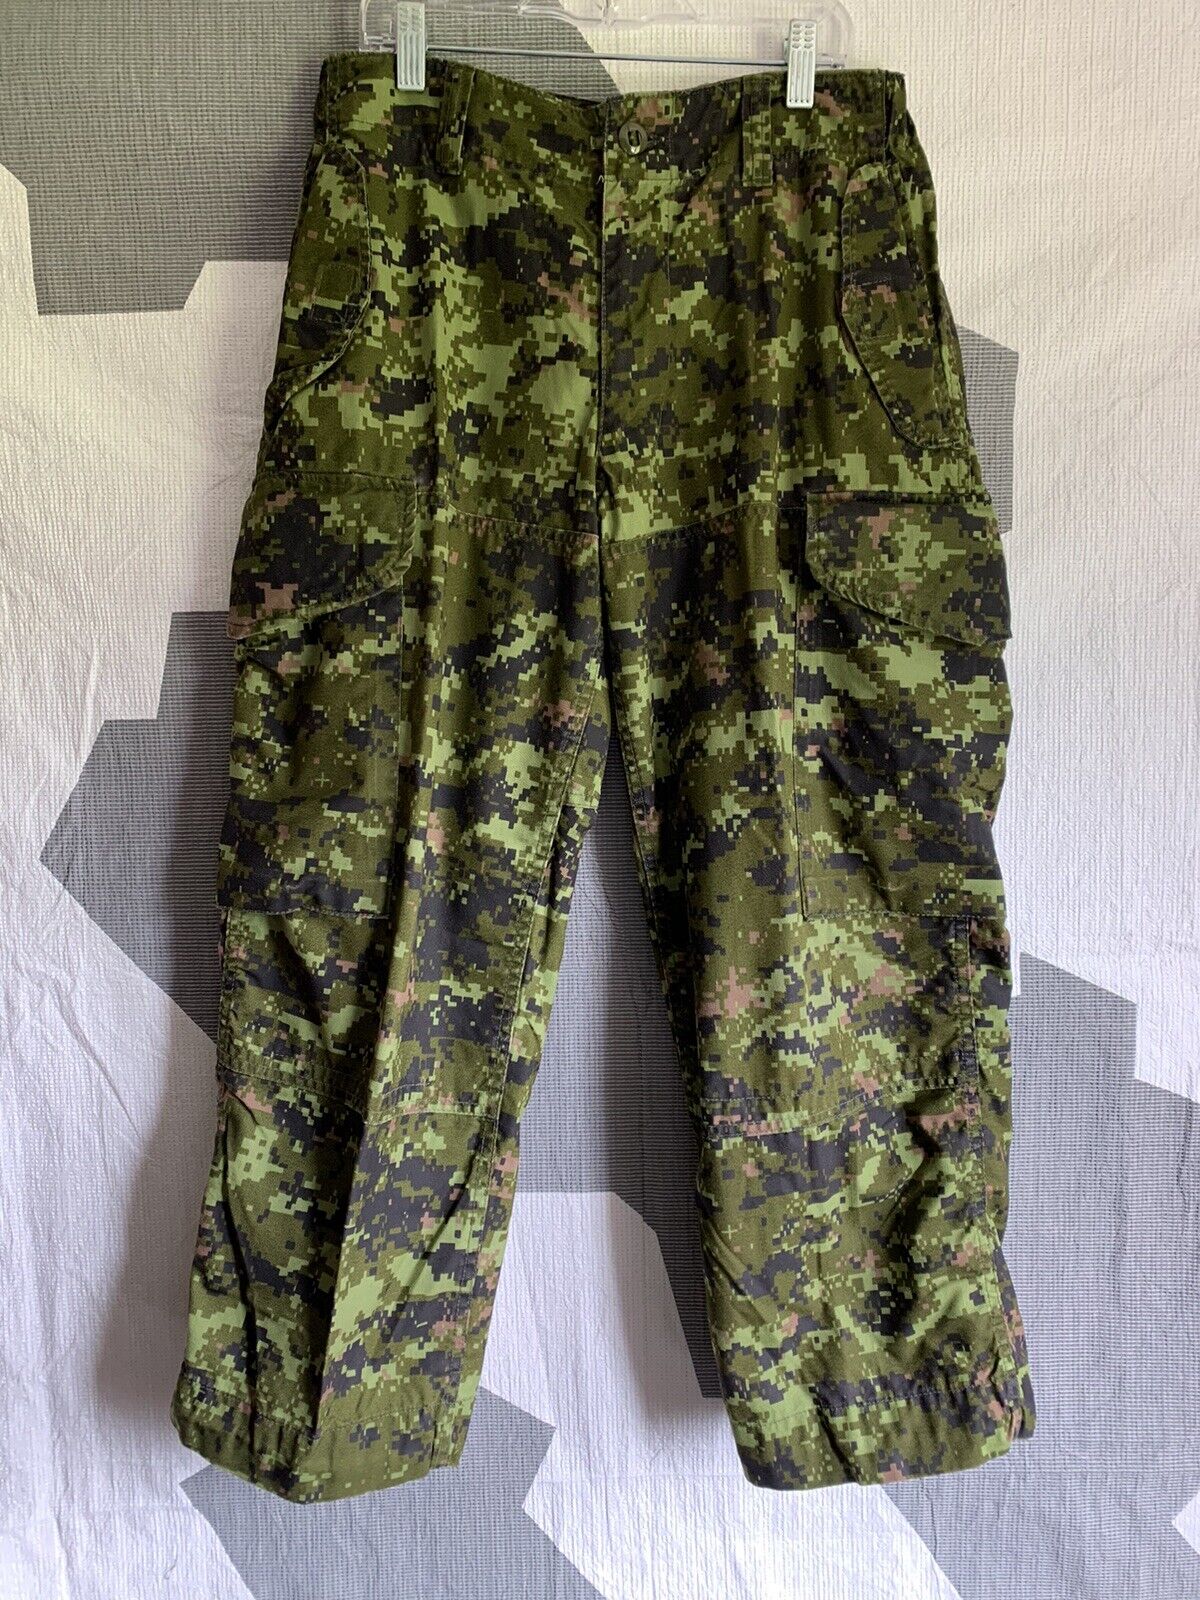 CADPAT combat Pants Size 6430 Canadian Army Surplus